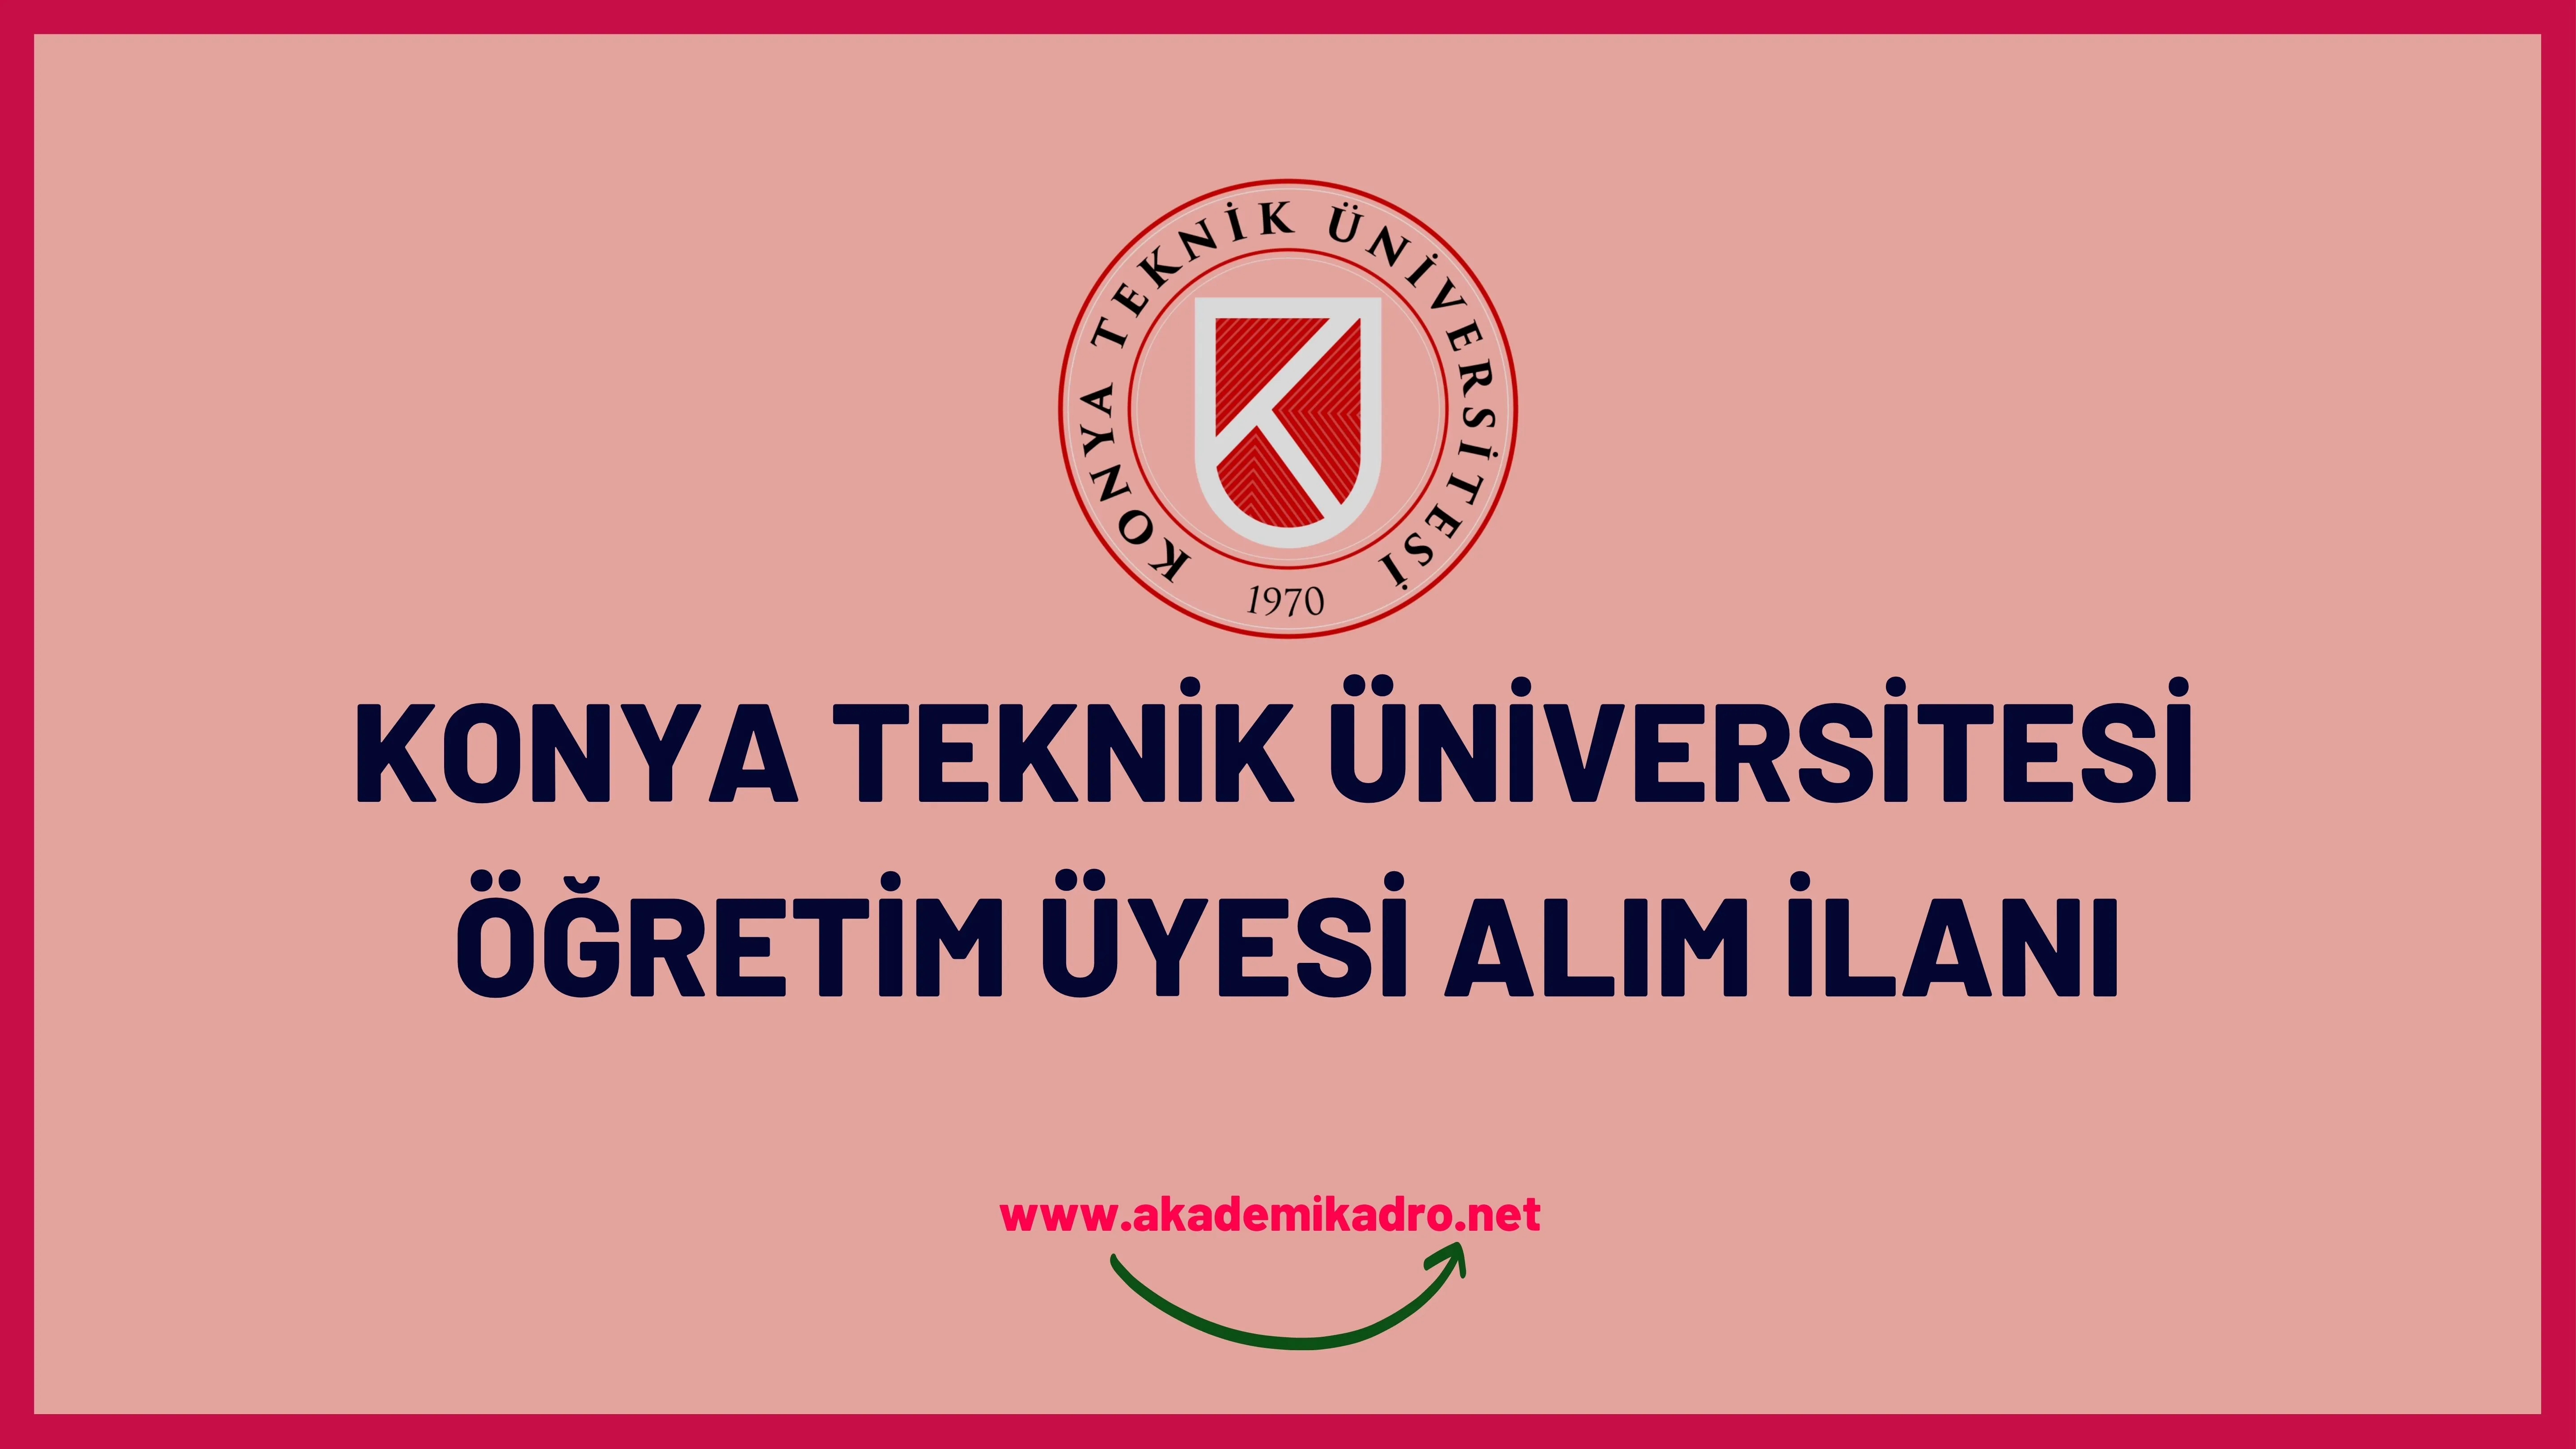 Konya Teknik Üniversitesi birçok alandan 24 akademik personel alacak.